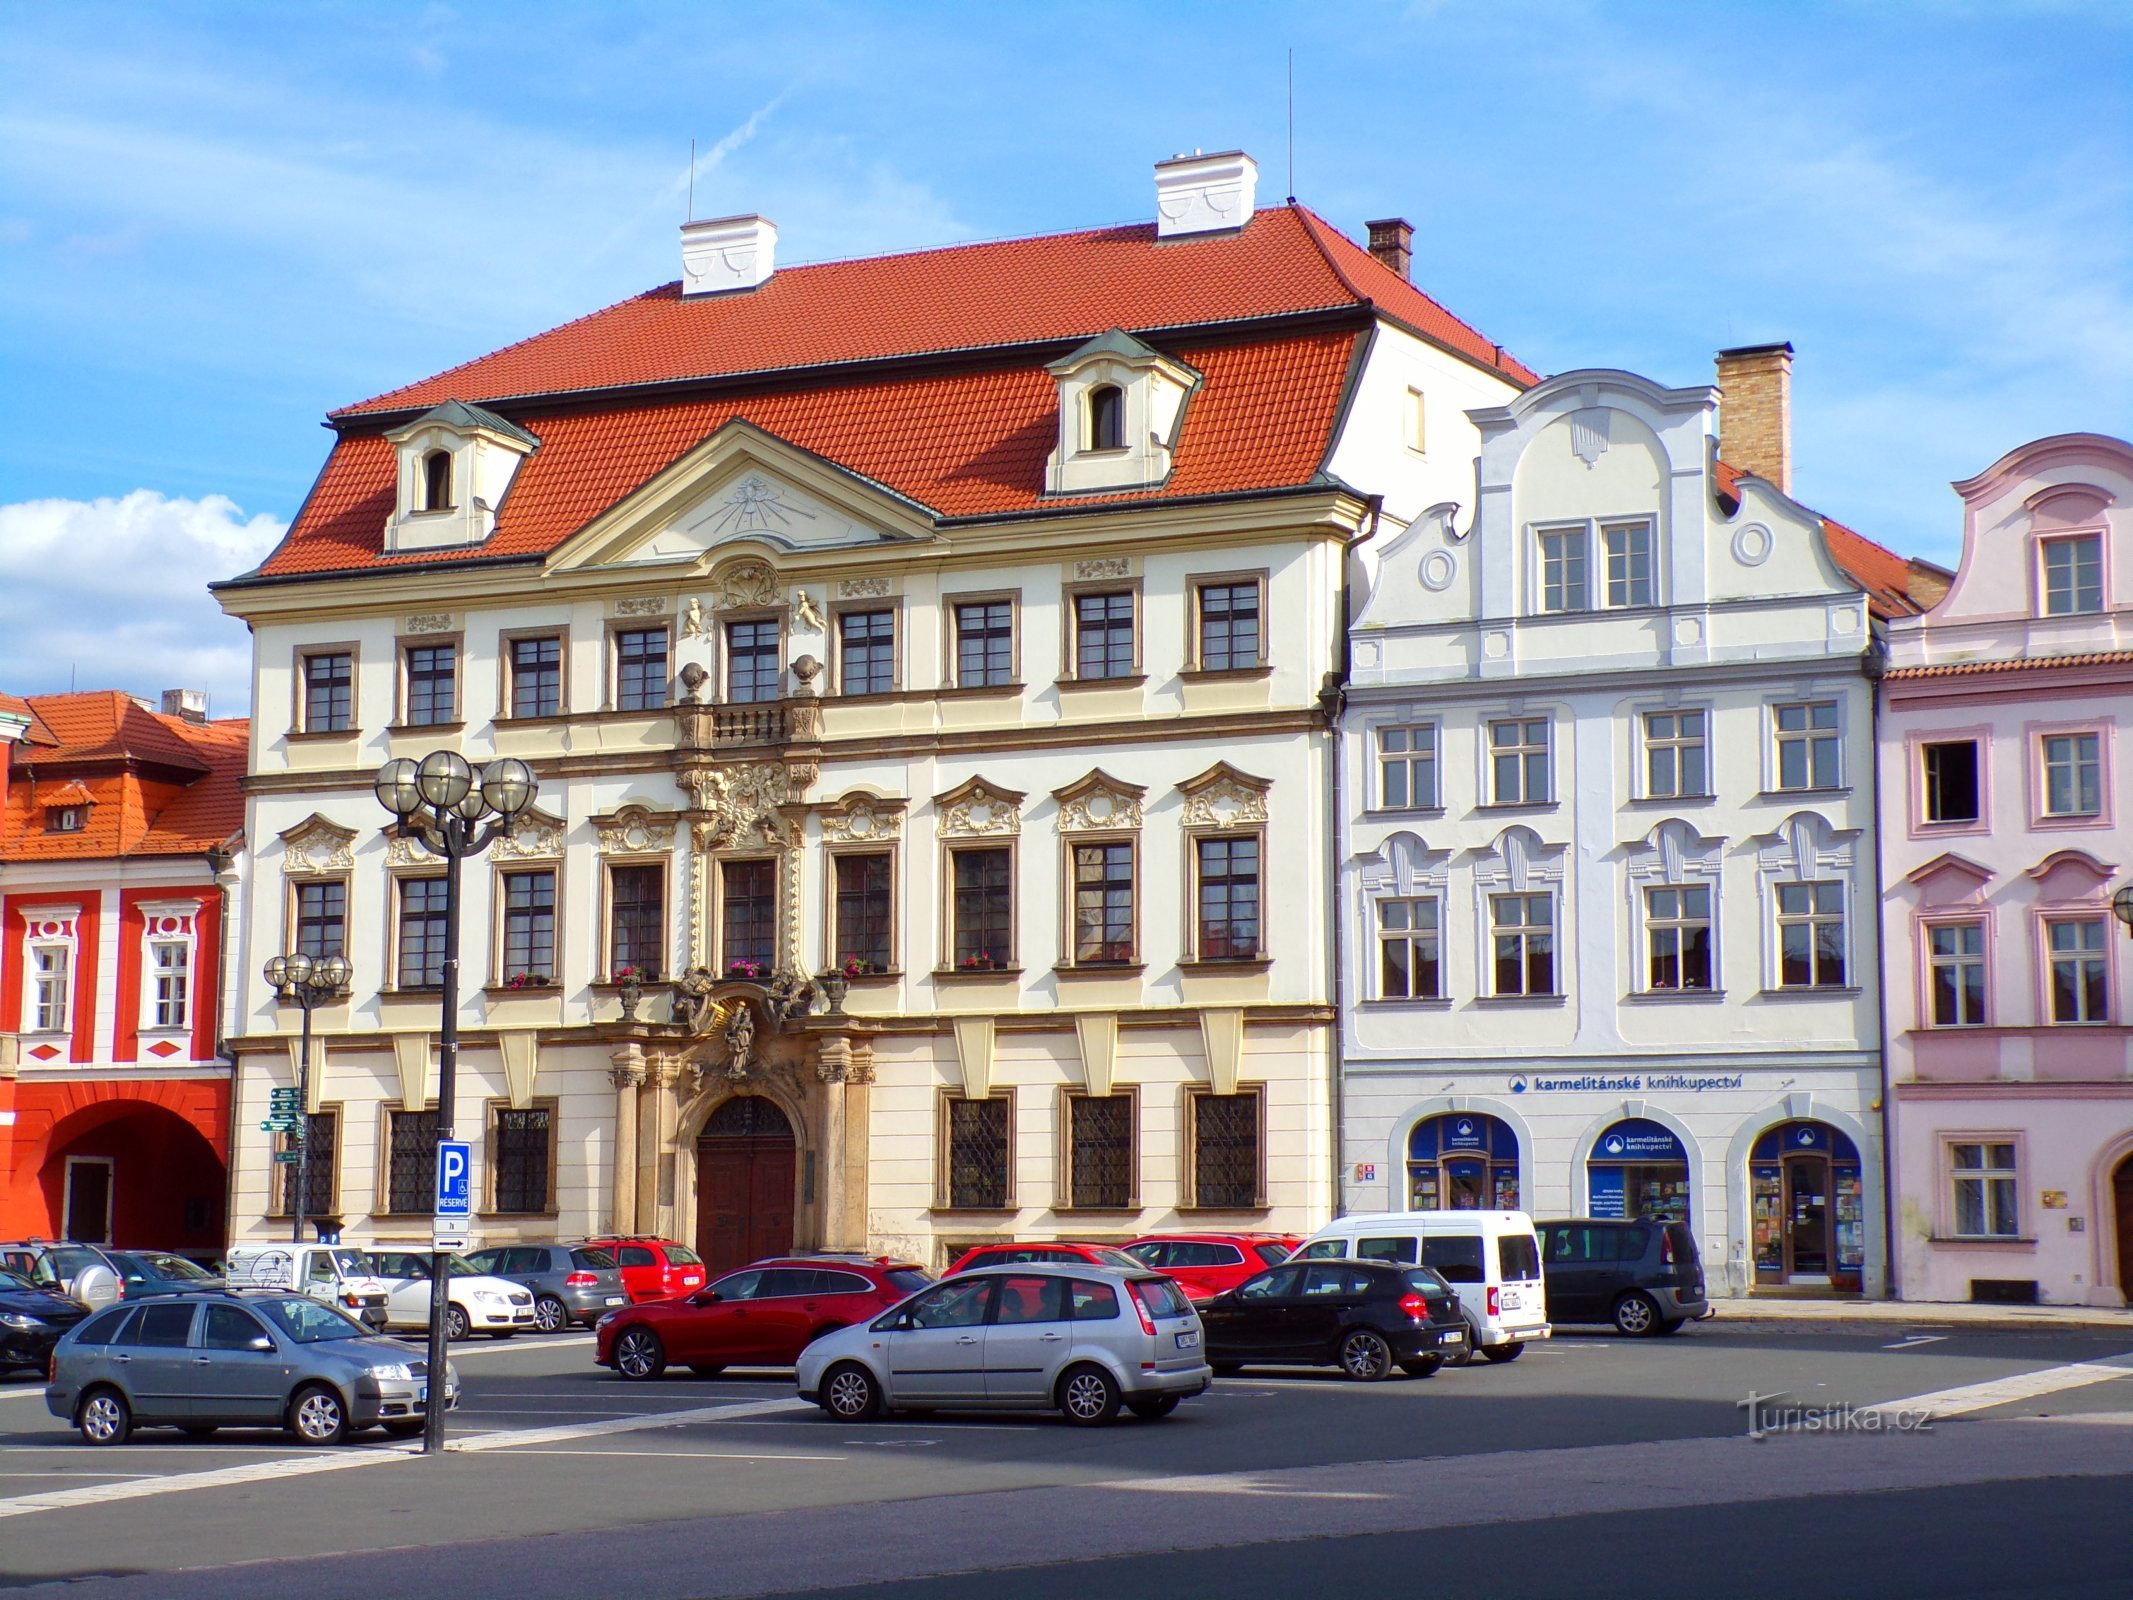 Velké náměstí št. 35-36 (Hradec Králové, 17.6.2022/XNUMX/XNUMX)